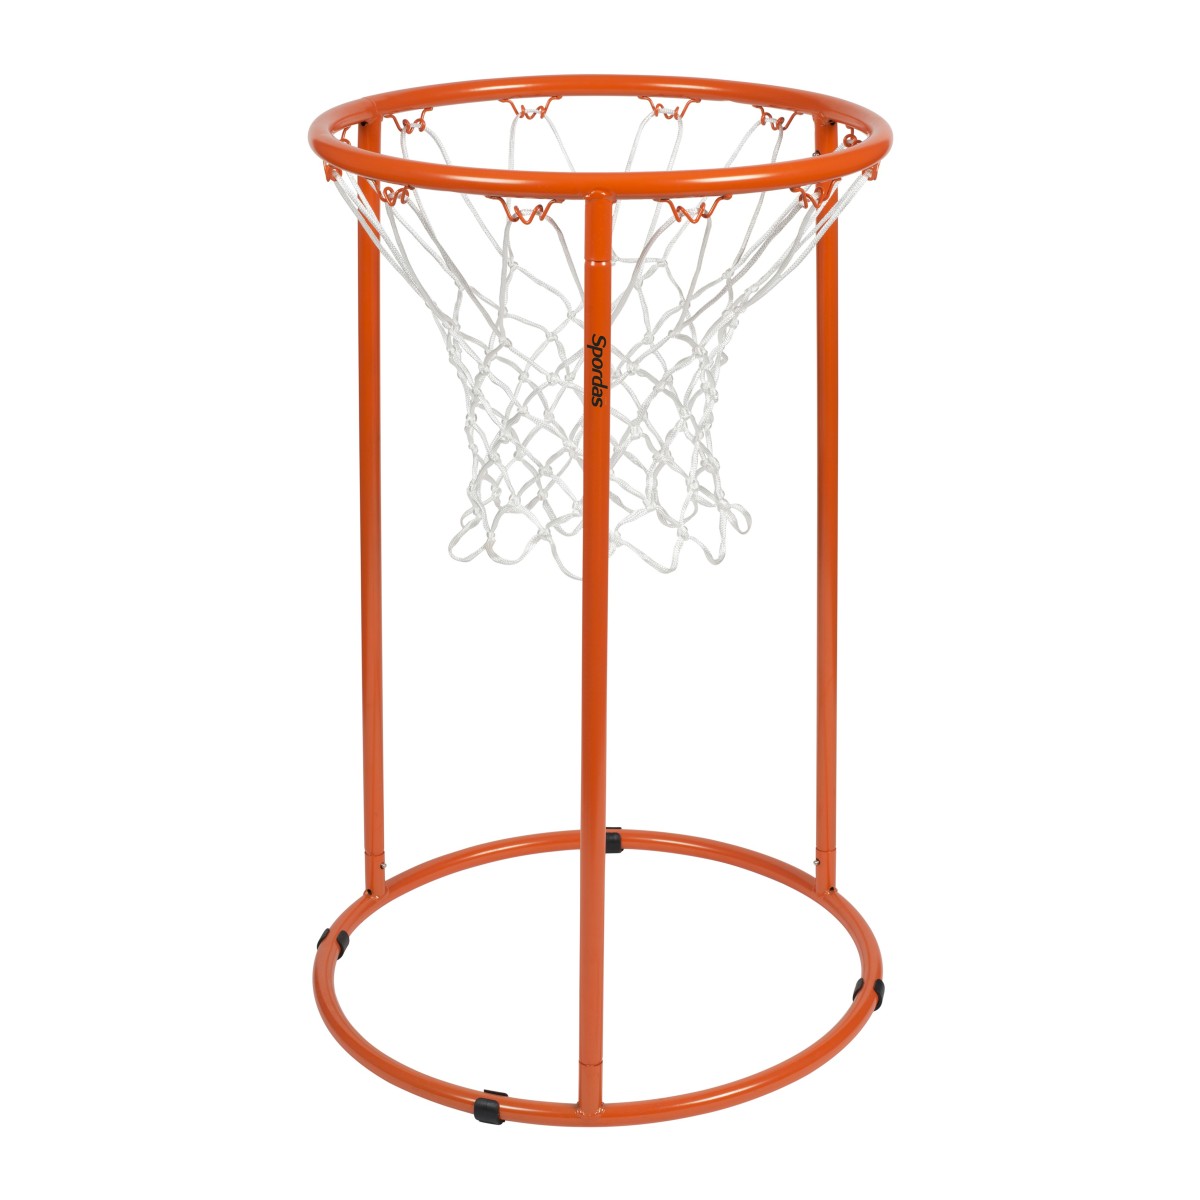 Mini ballon de basket en mousse de 12,7 cm pour mini panier de